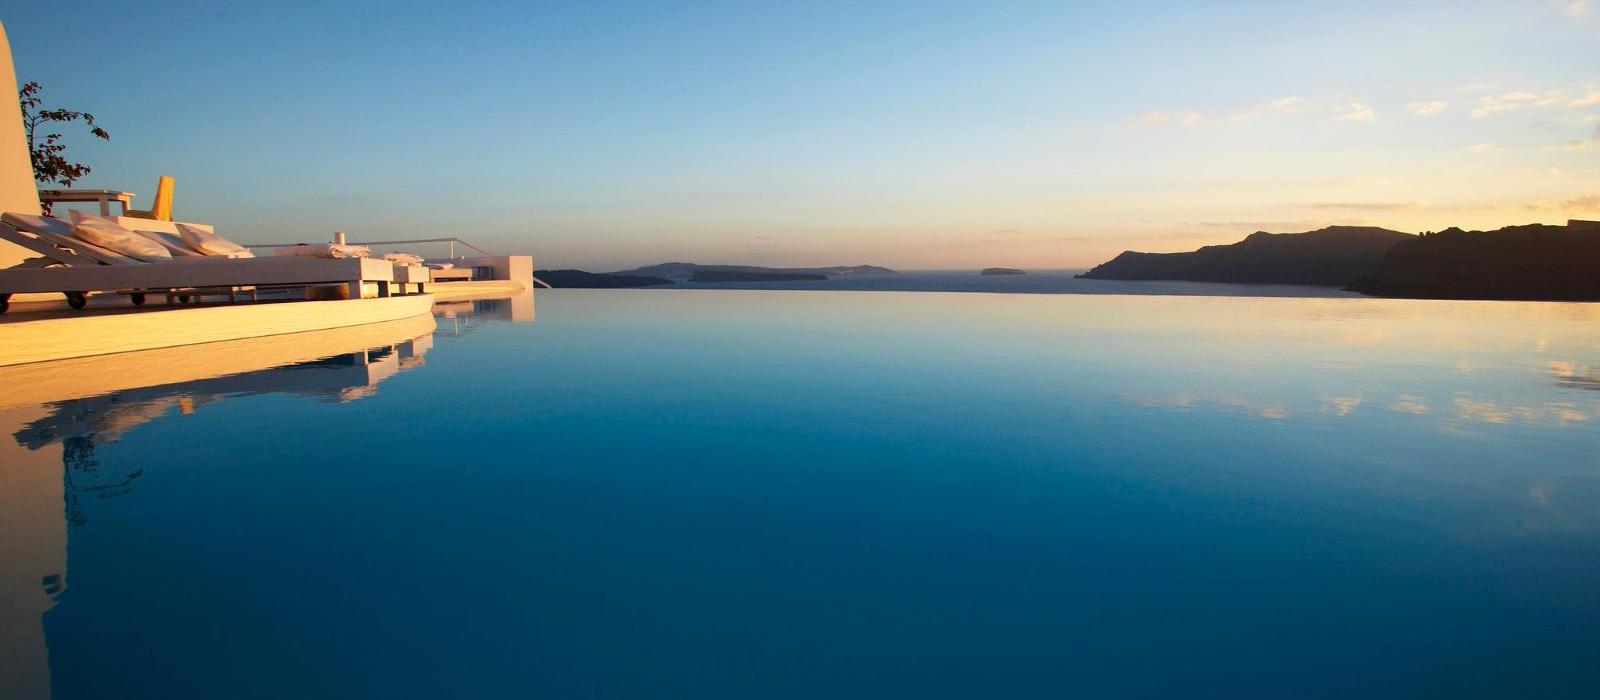 圣托里尼嘉邸祺度假酒店(Katikies Santorini) 泳池日落景观图片  www.lhw.cn